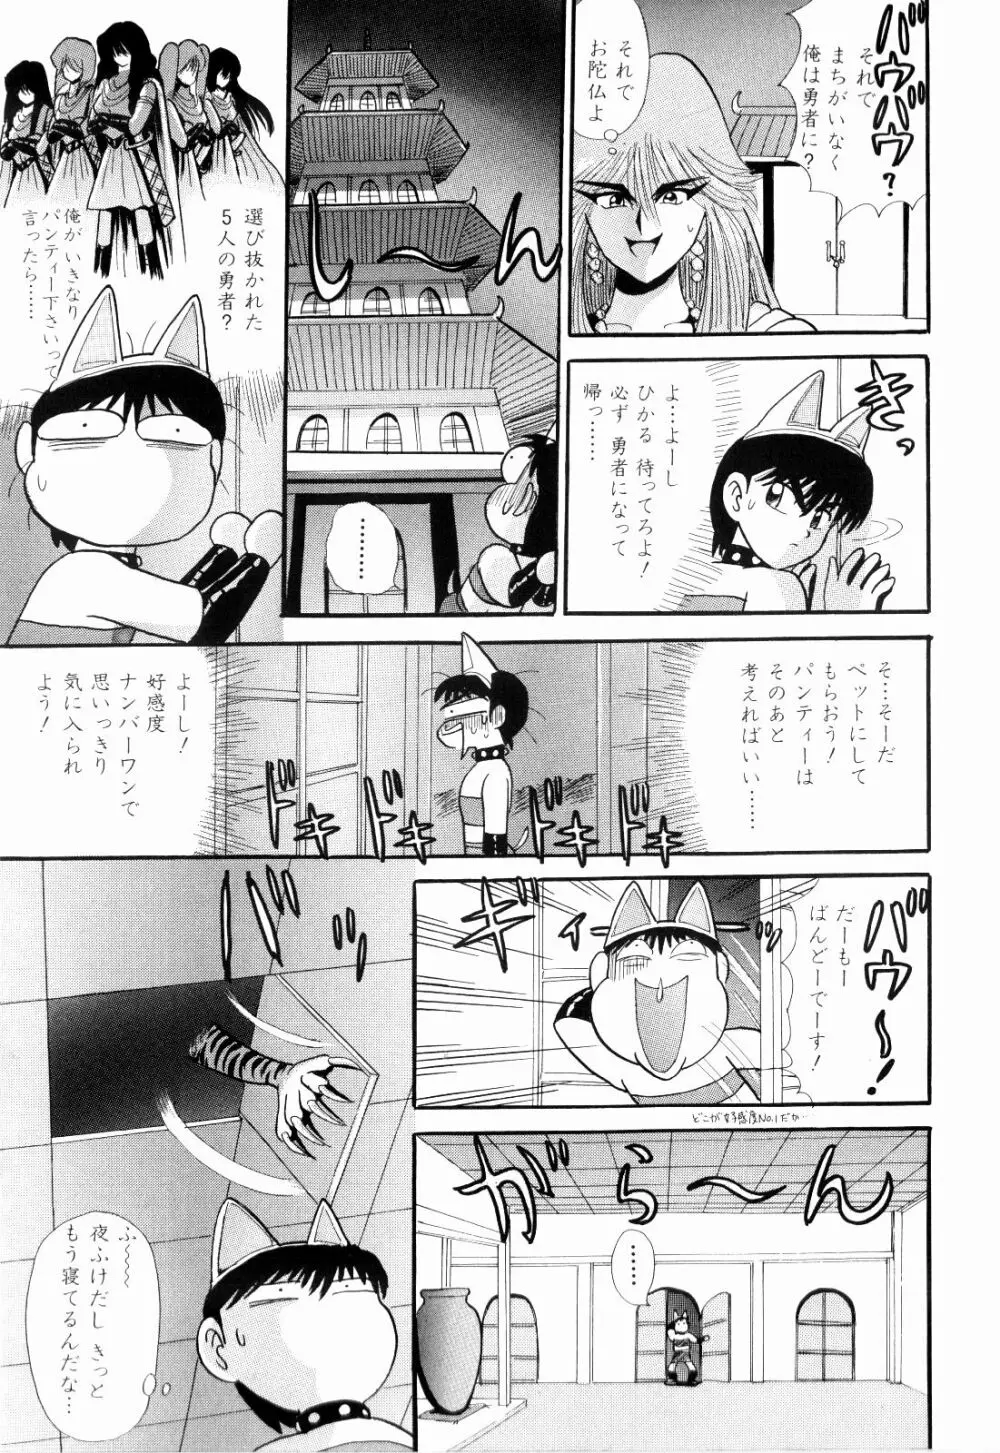 Kenjiro Kakimoto – Futari Kurashi 09 17ページ